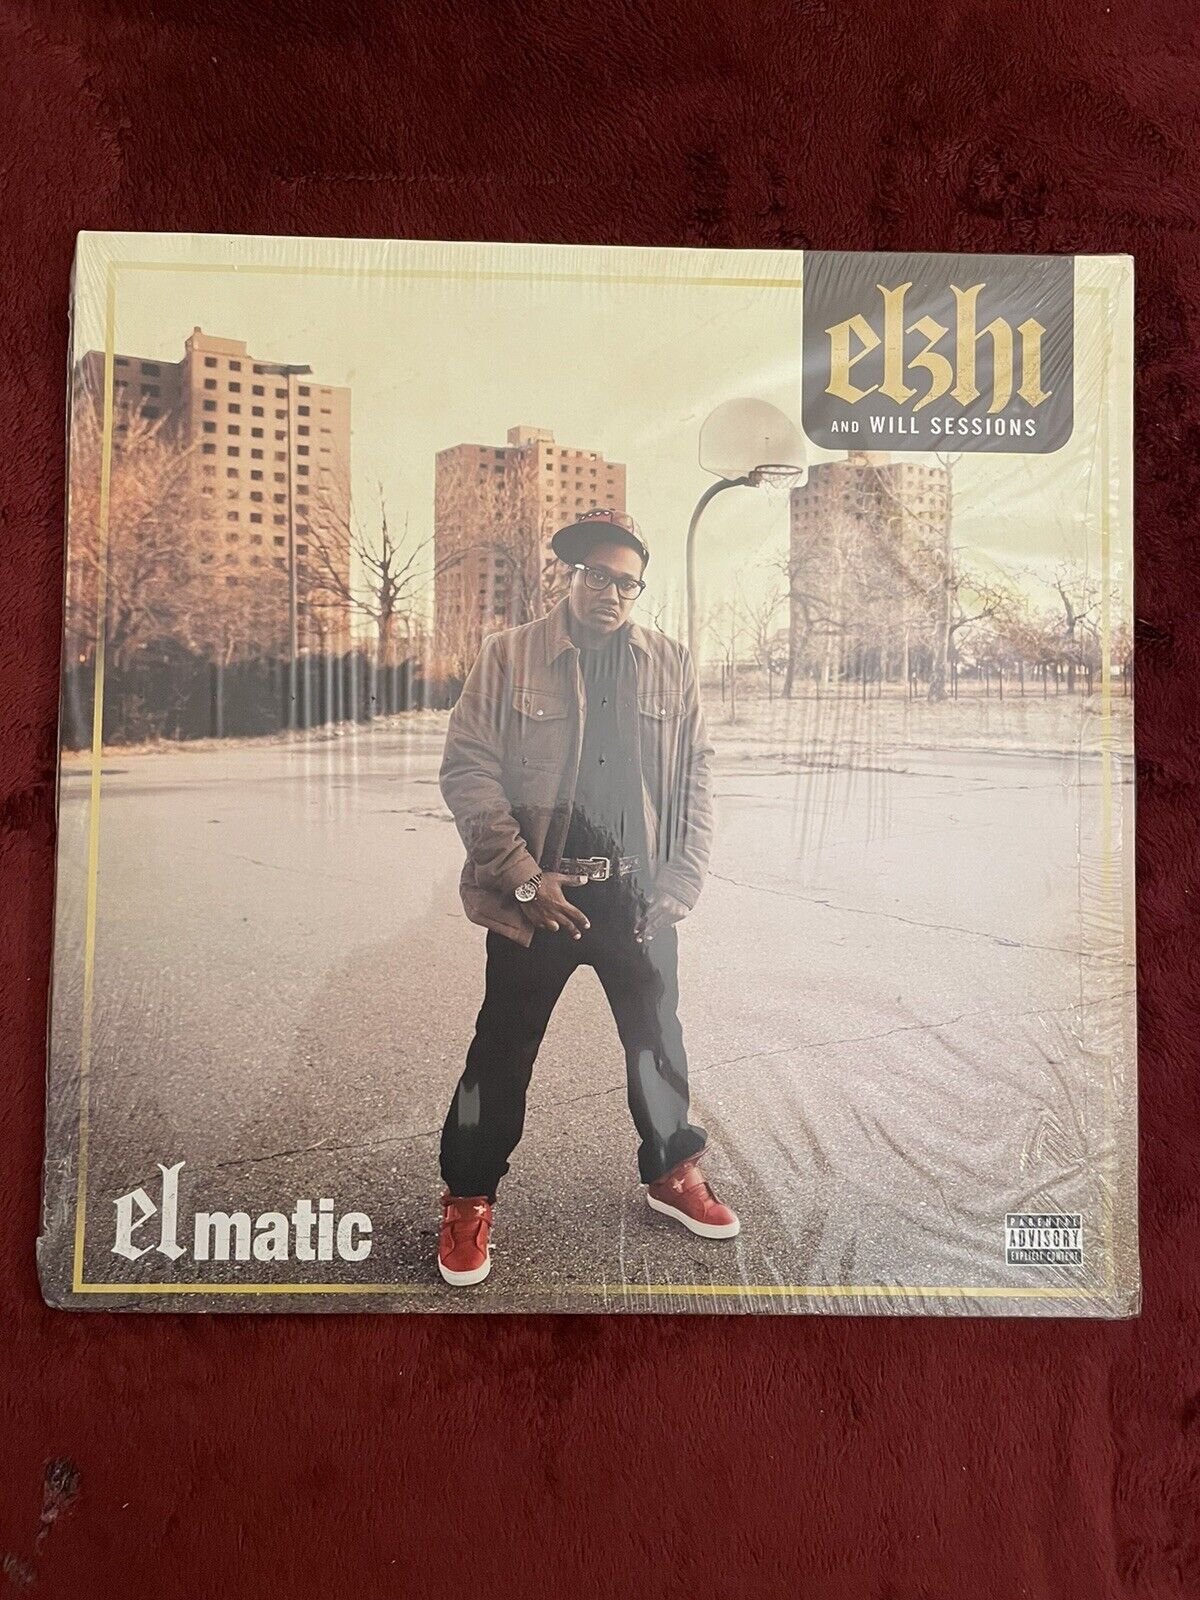 Elzhi & Will Sessions / Elmatic Vinyl LP, 2016 Reissue. Rare, OOP Hip Hop